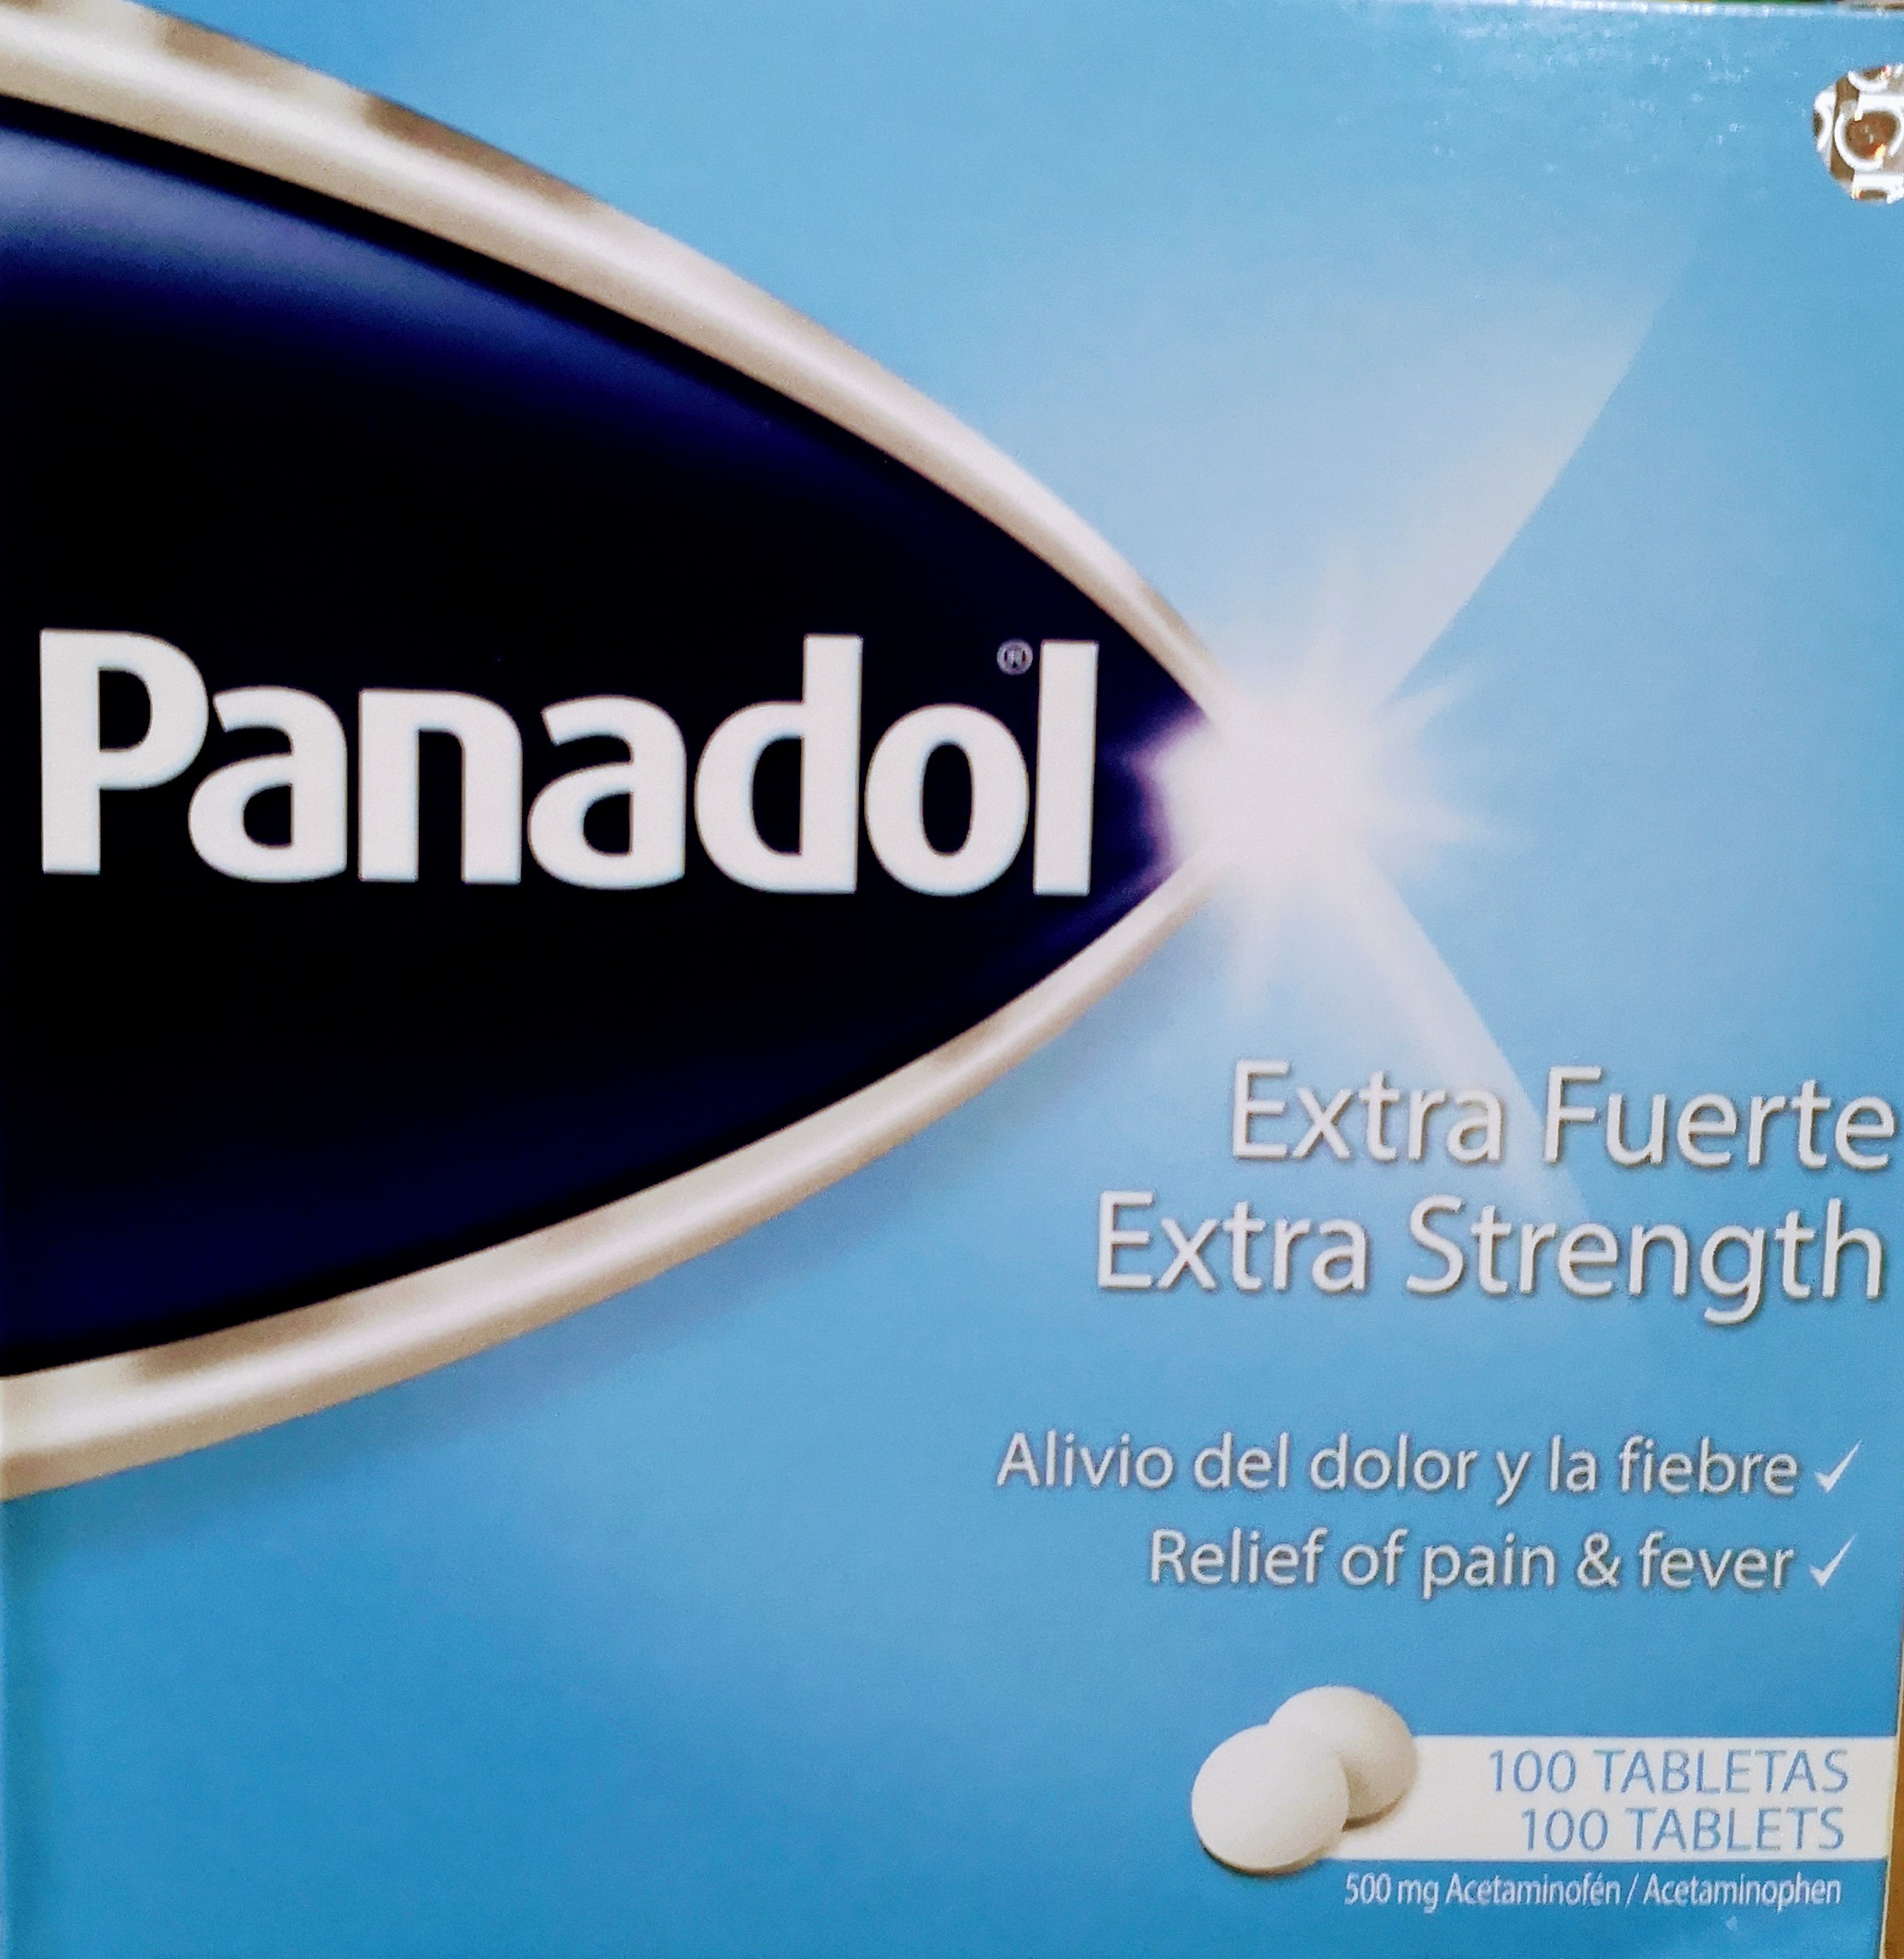 Panadol Extra Fuerte, 500 mg Acetaminofén, 100 tabletas